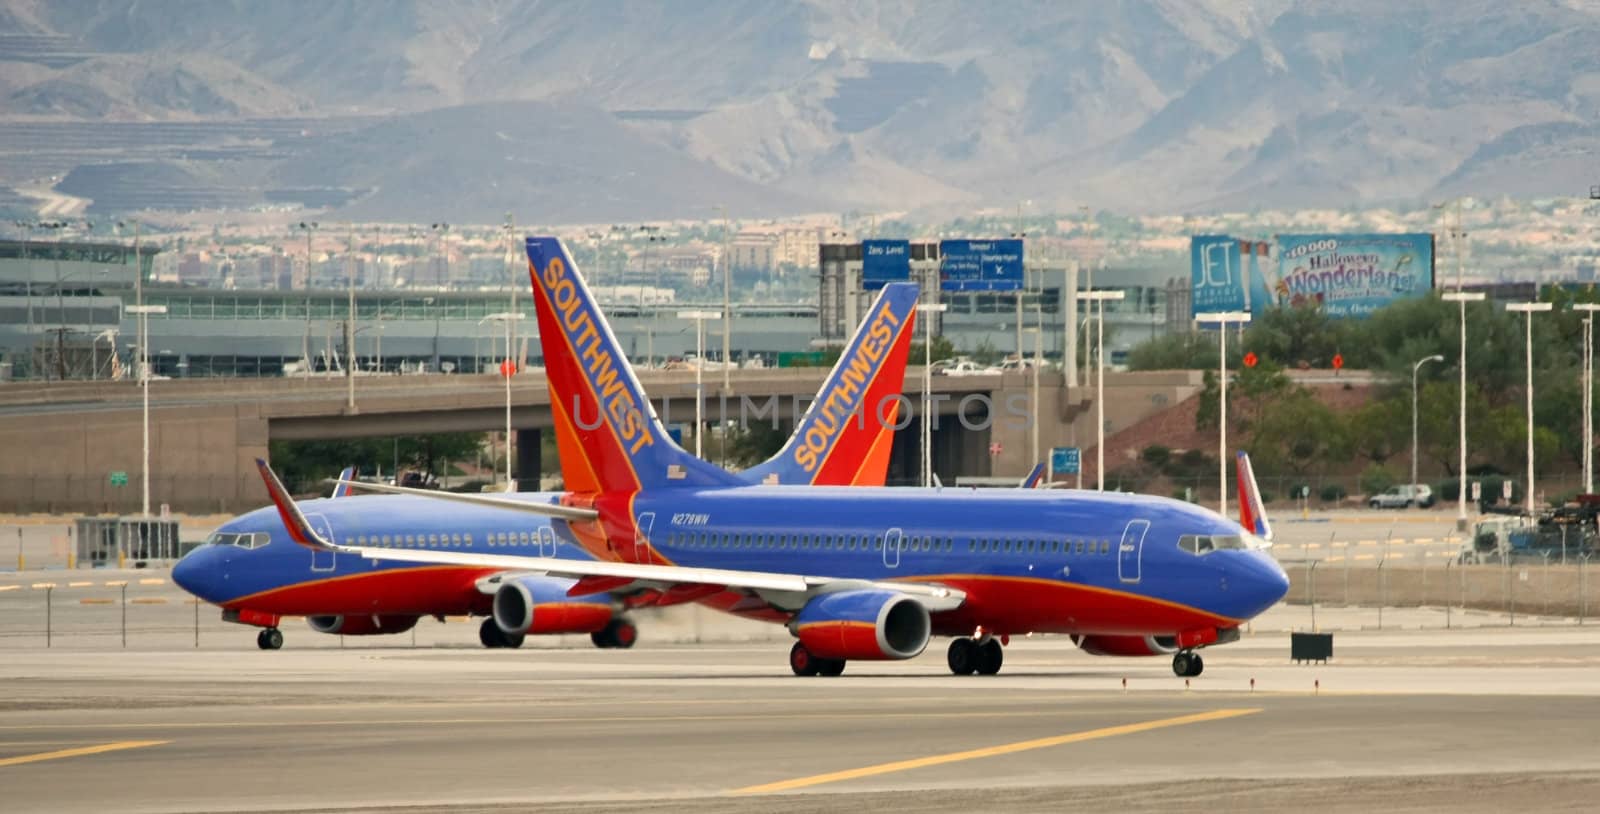 Southwest Airlines Las Vegas by bellafotosolo